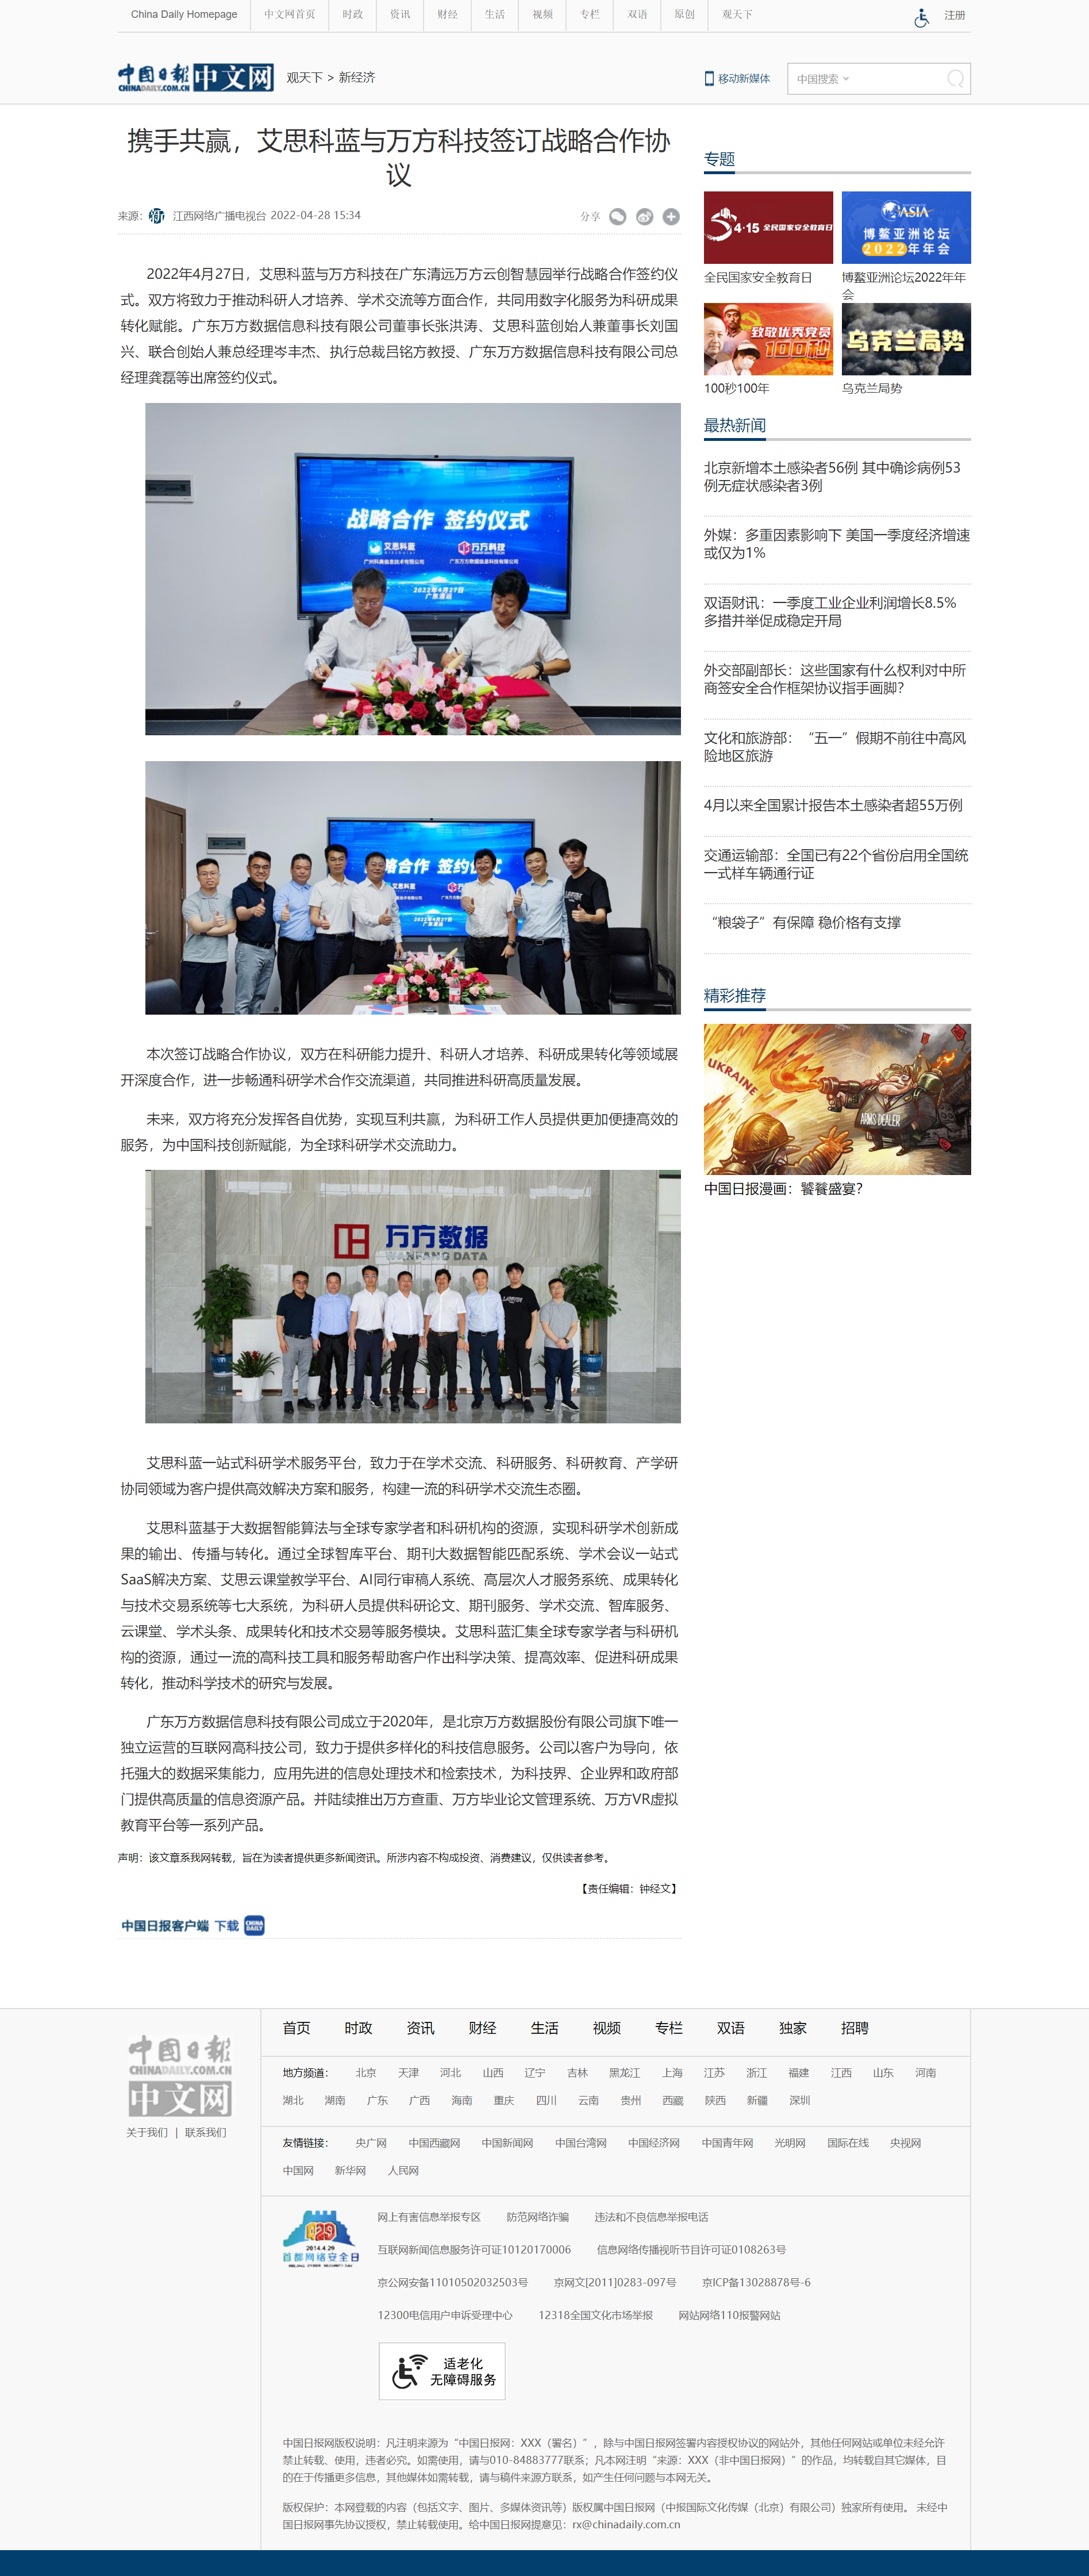 携手共赢，艾思科蓝与万方科技签订战略合作协议 - 中国日报网.png